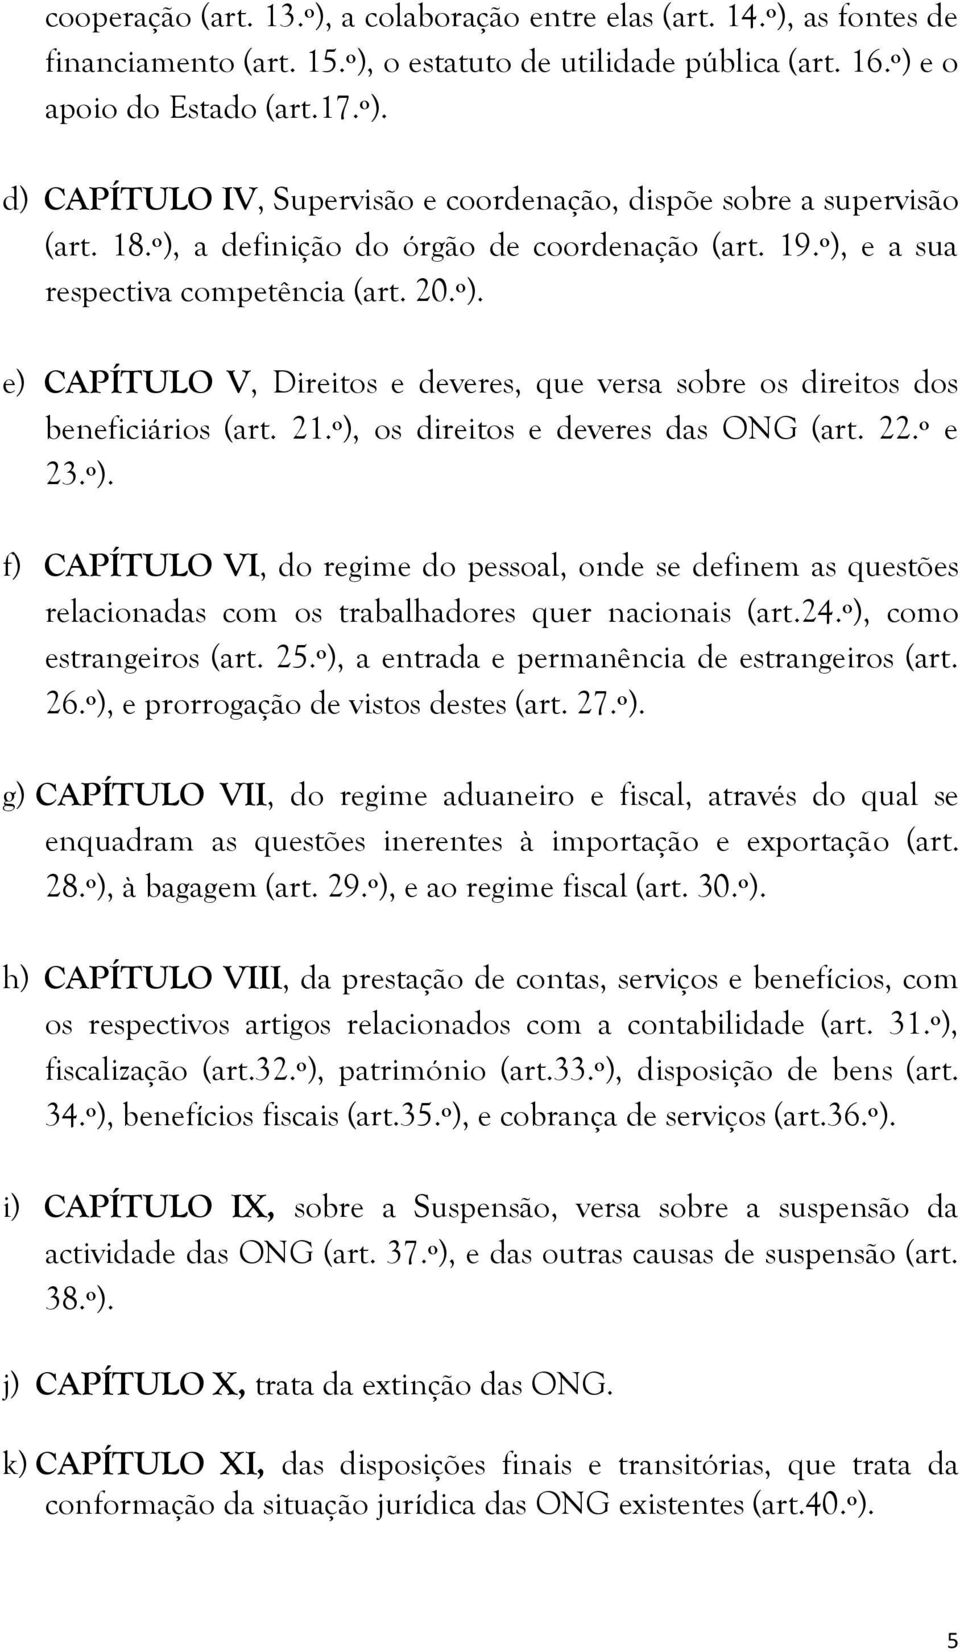 º), os direitos e deveres das ONG (art. 22.º e 23.º). f) CAPÍTULO VI, do regime do pessoal, onde se definem as questões relacionadas com os trabalhadores quer nacionais (art.24.